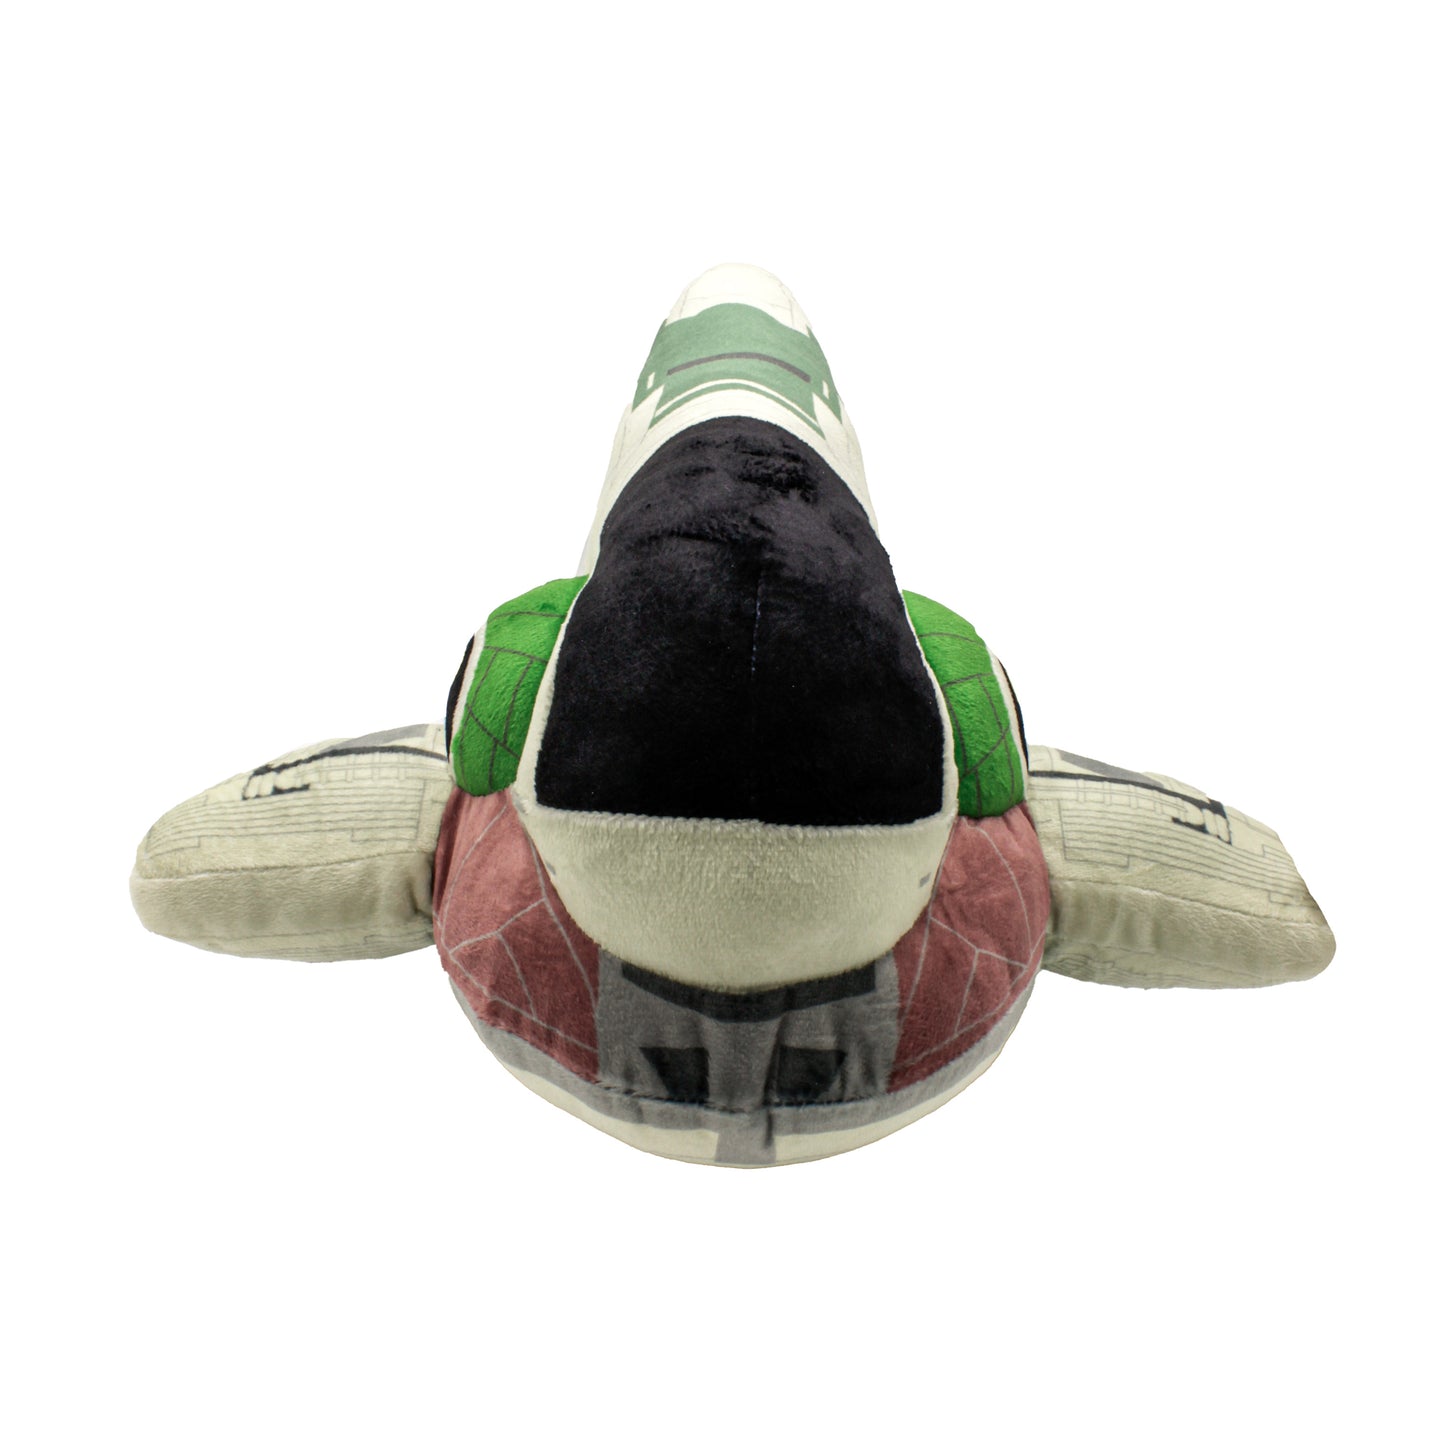 Disney Star Wars Boba Fett Starship 12-Inch Plush Toy